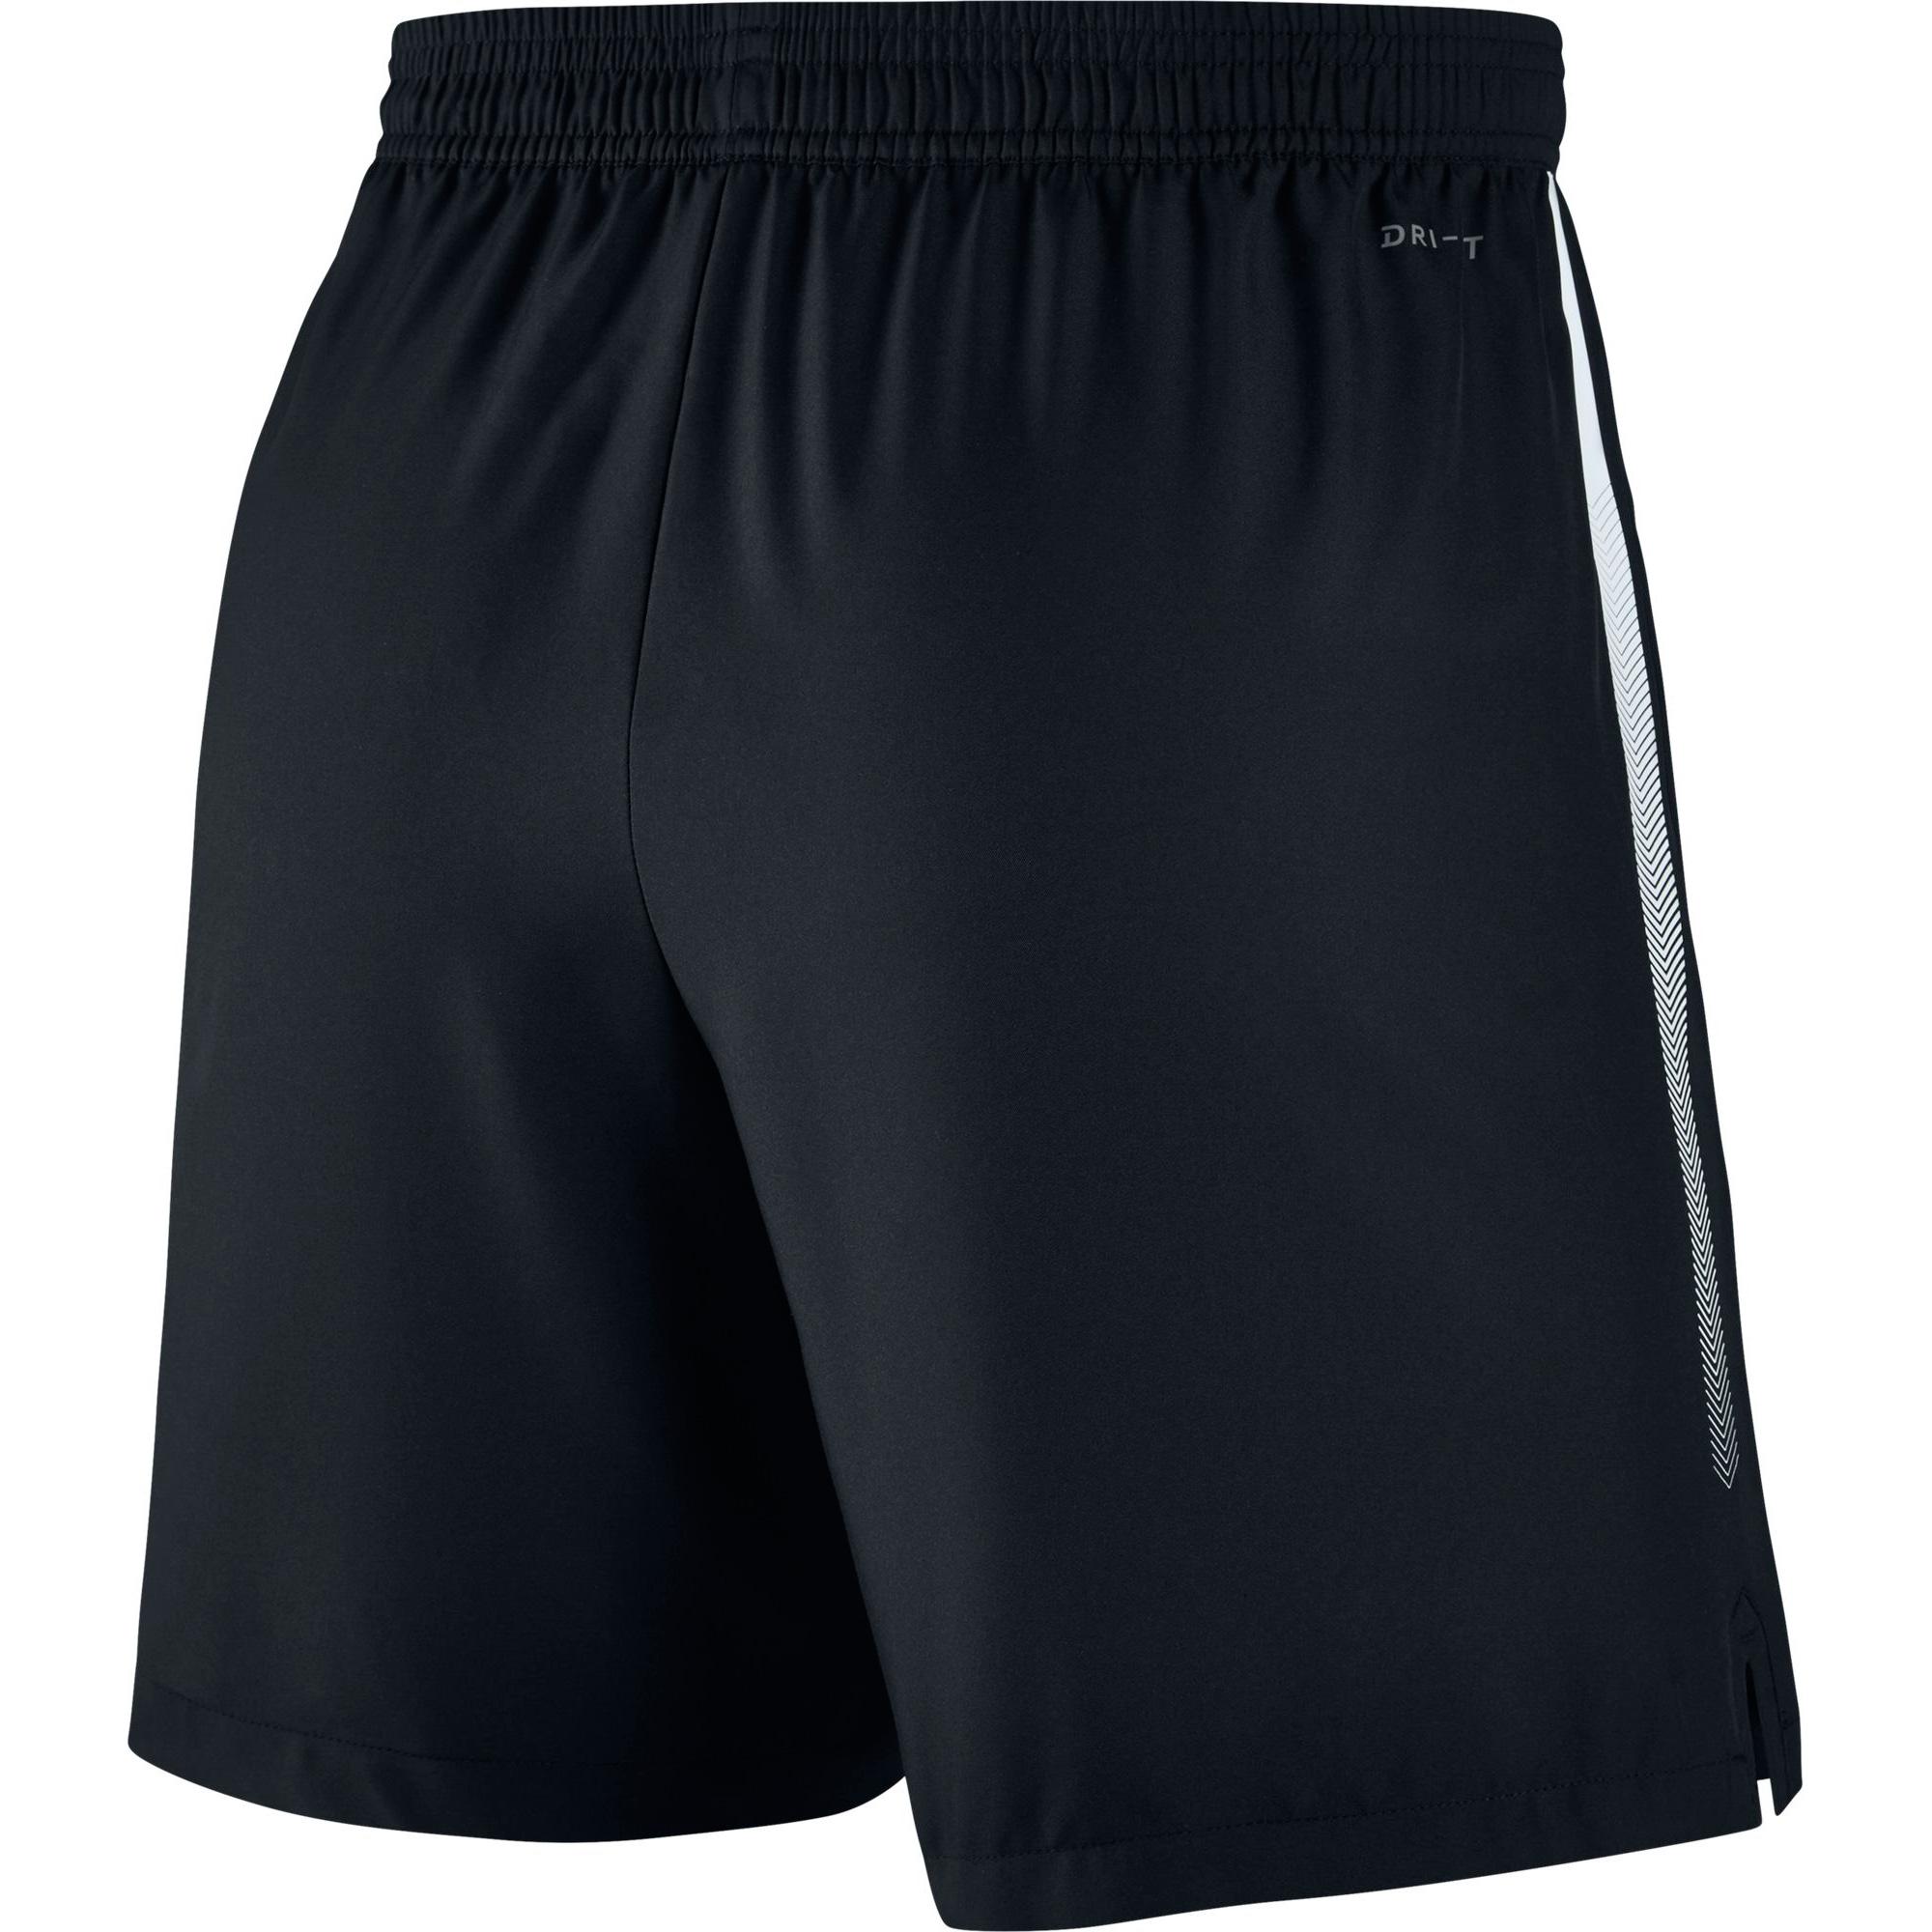 Nike Mens Dry 7 Inch Tennis Shorts - Black - Tennisnuts.com2000 x 2000